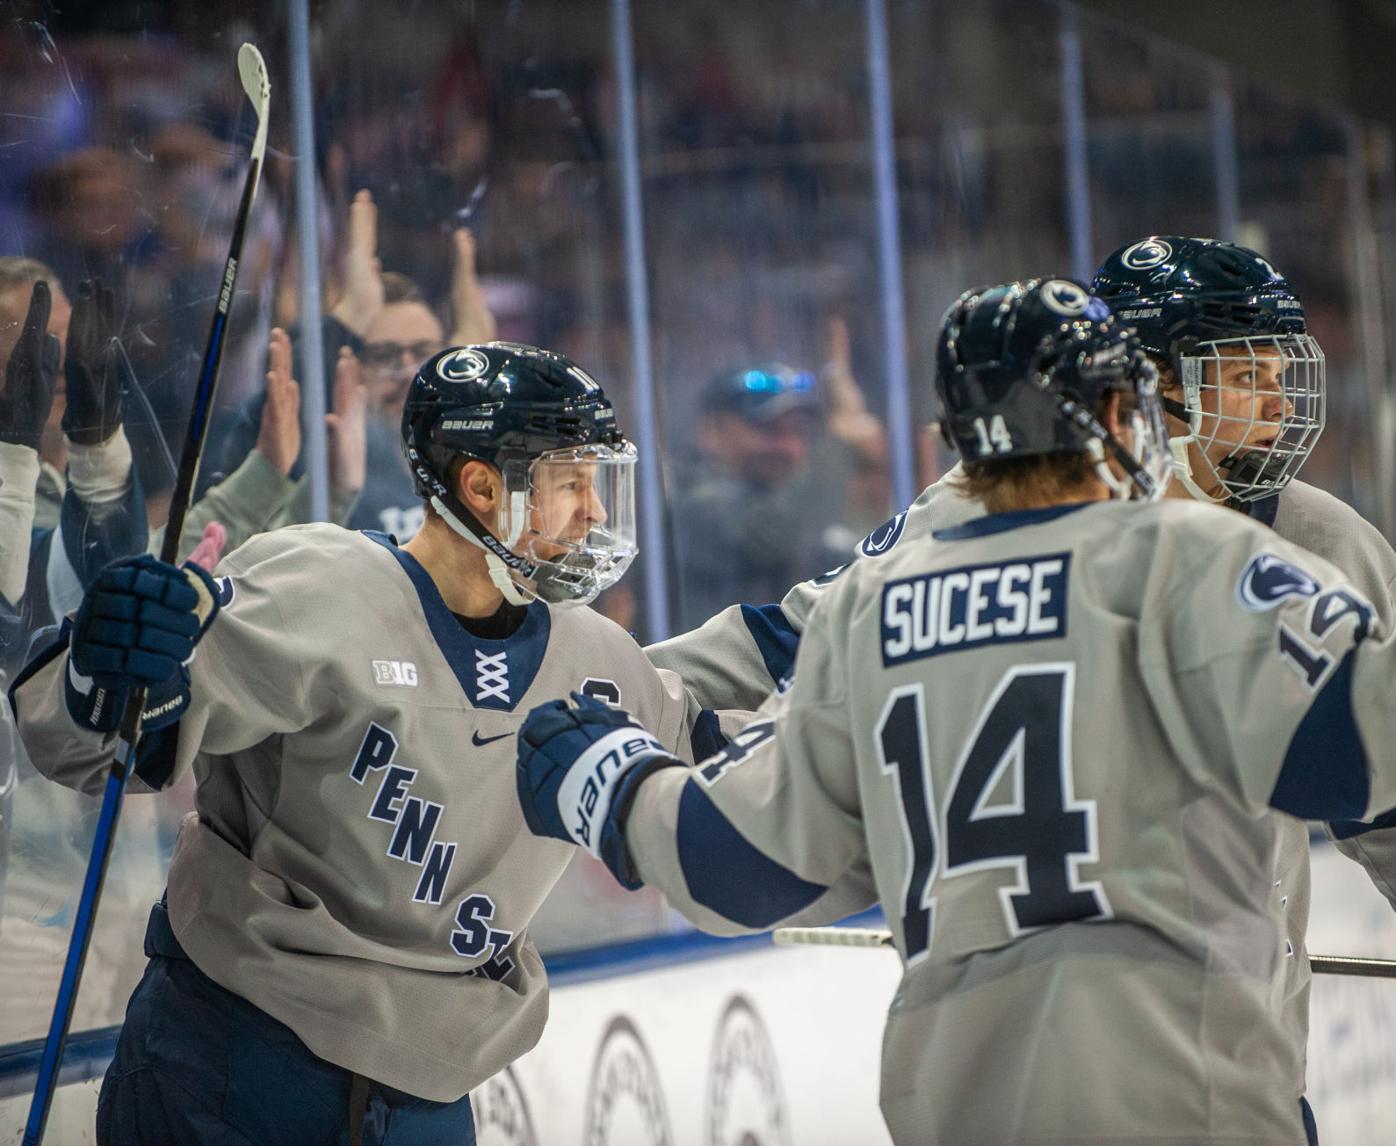 Penn State men's hockey skates in new third jerseys against